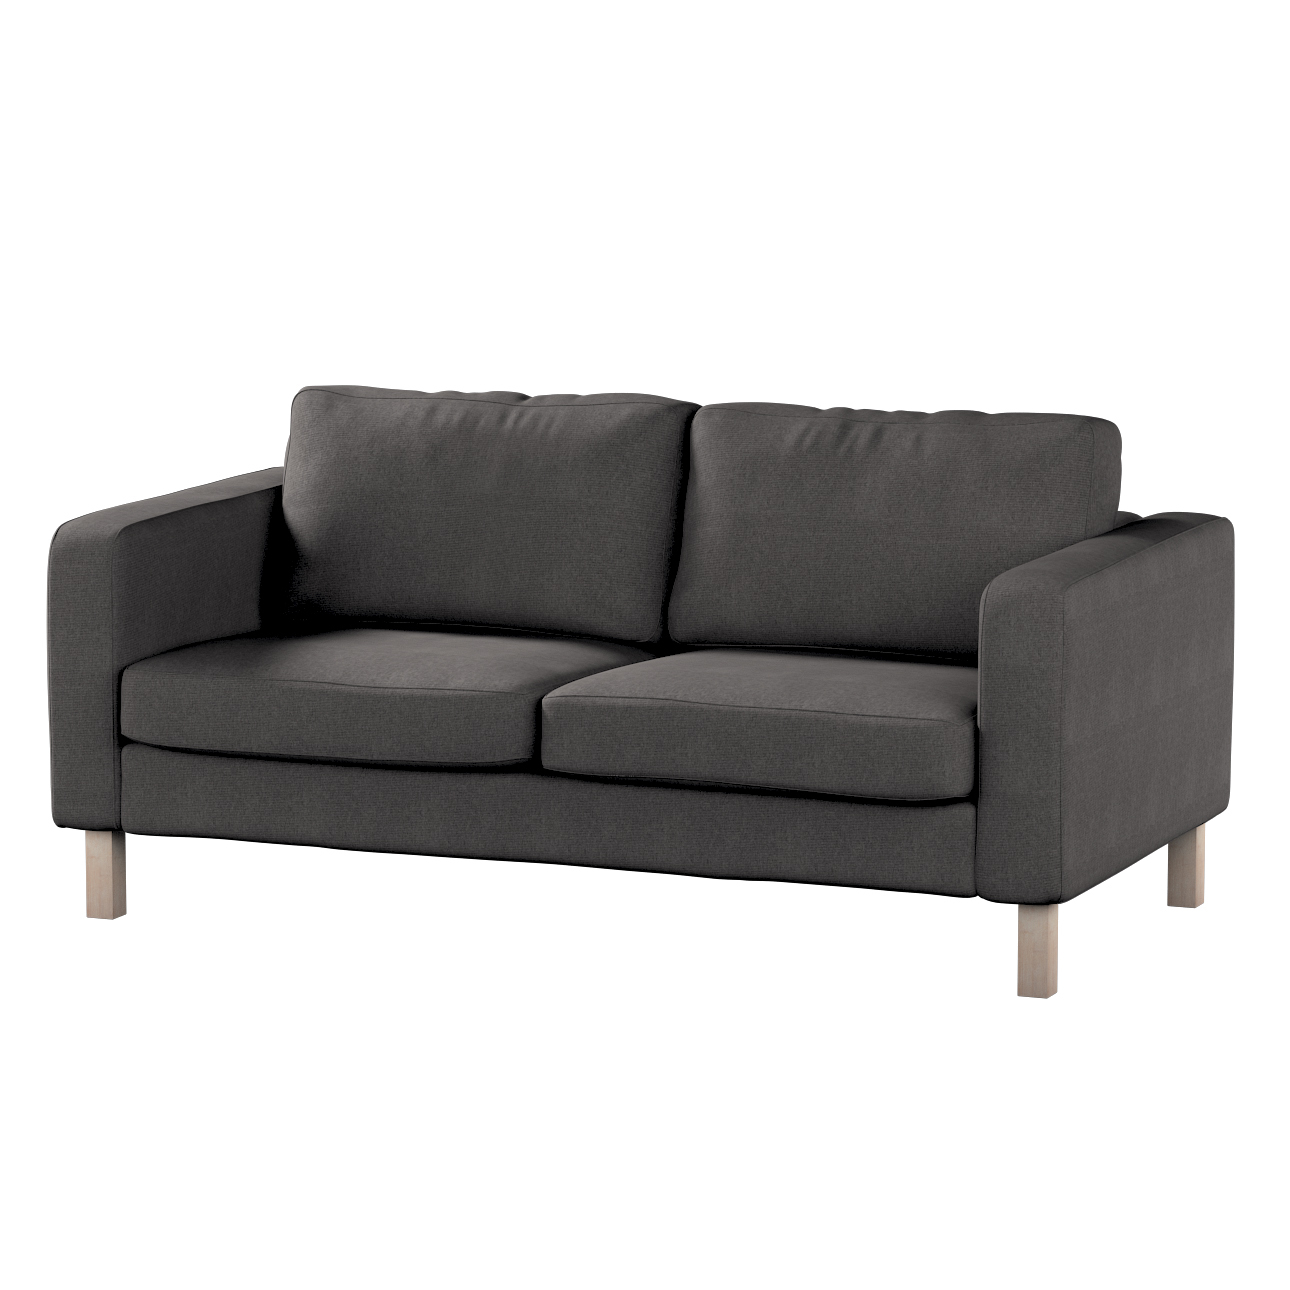 Bezug für Karlstad 2-Sitzer Sofa nicht ausklappbar, dunkelgrau, Sofahusse, günstig online kaufen